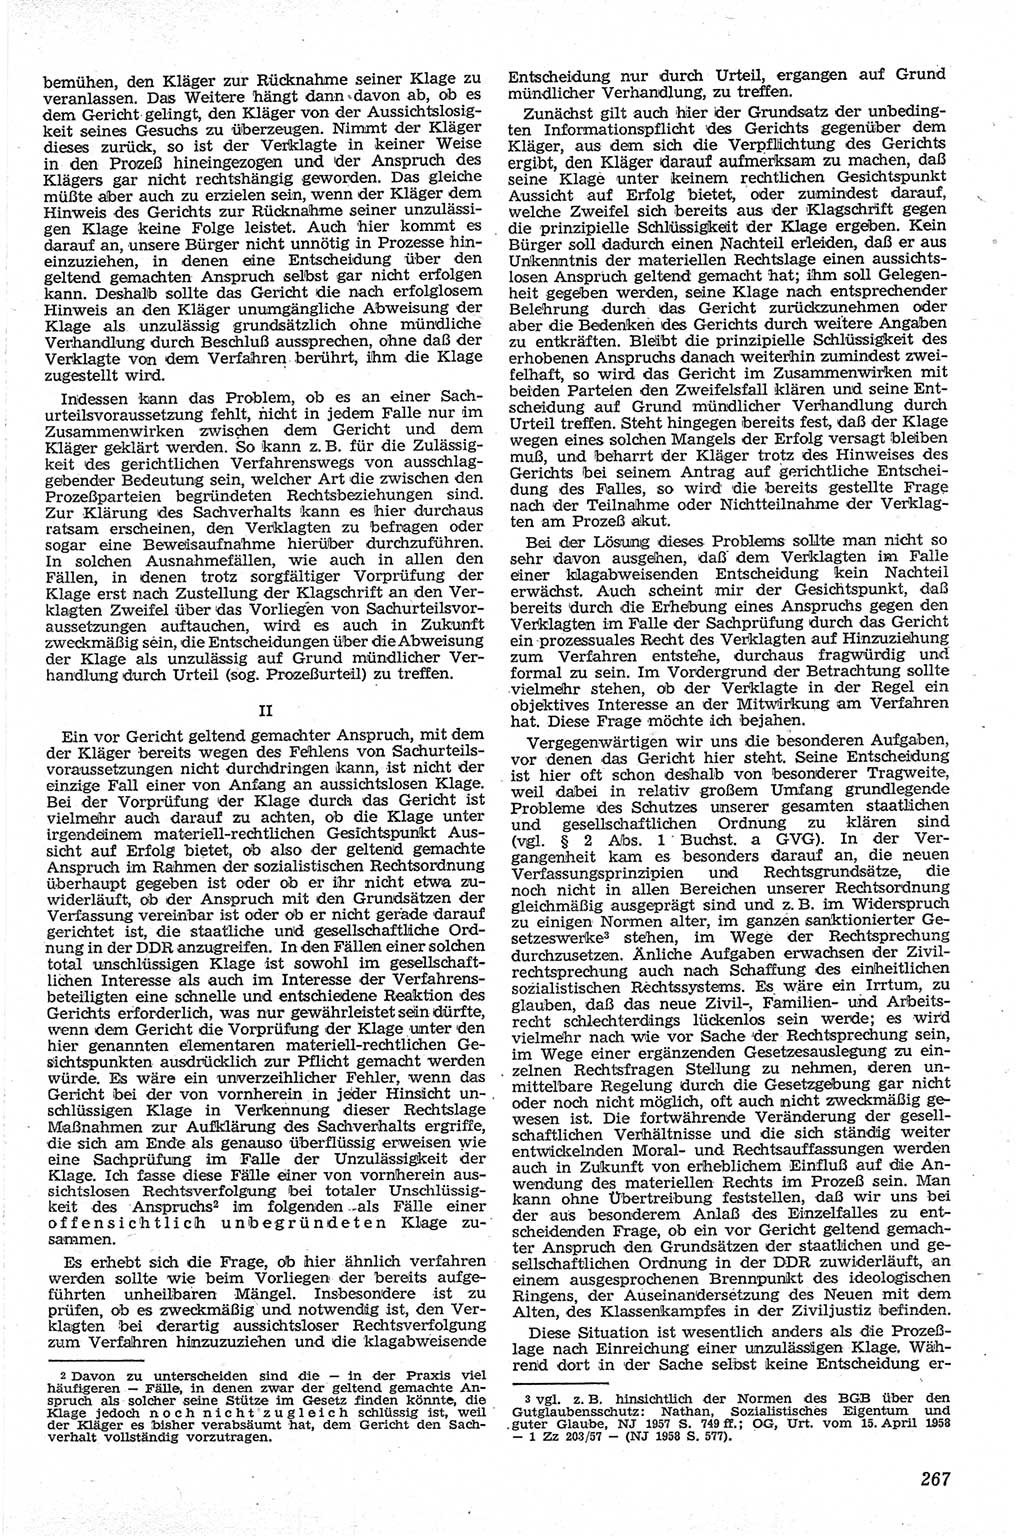 Neue Justiz (NJ), Zeitschrift für Recht und Rechtswissenschaft [Deutsche Demokratische Republik (DDR)], 13. Jahrgang 1959, Seite 267 (NJ DDR 1959, S. 267)